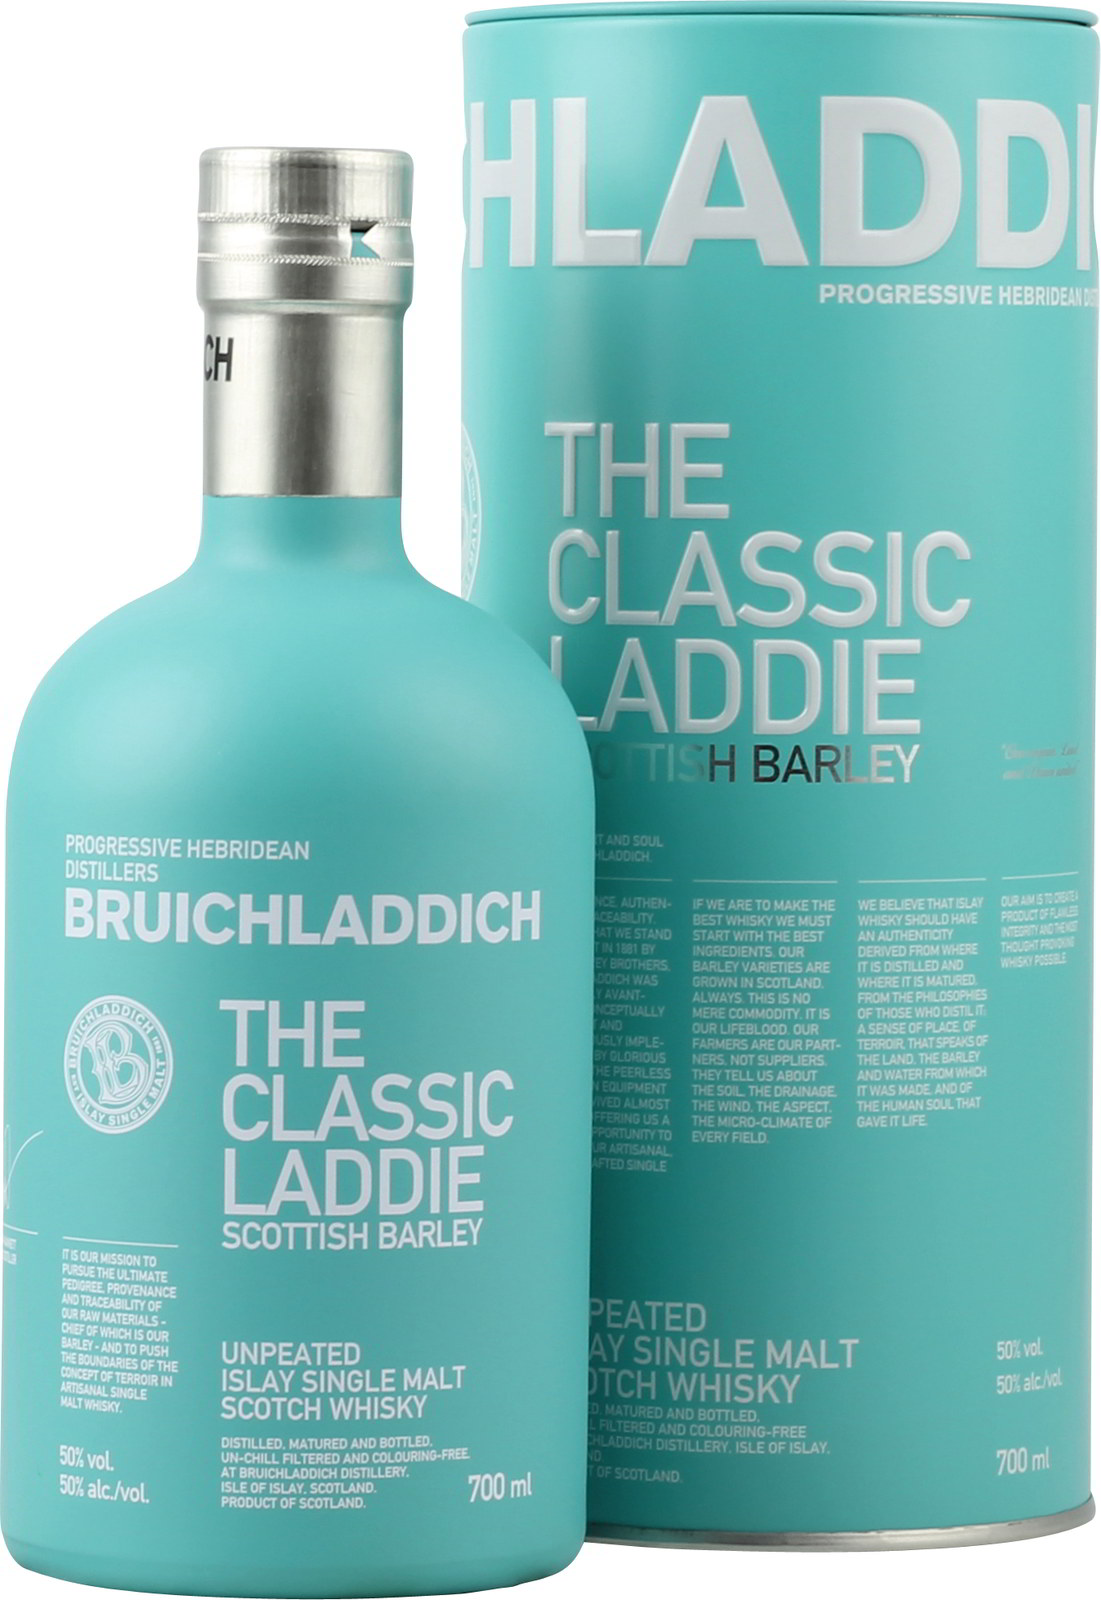 Scottish Bruichladdich Islay Barley Classic Laddie The